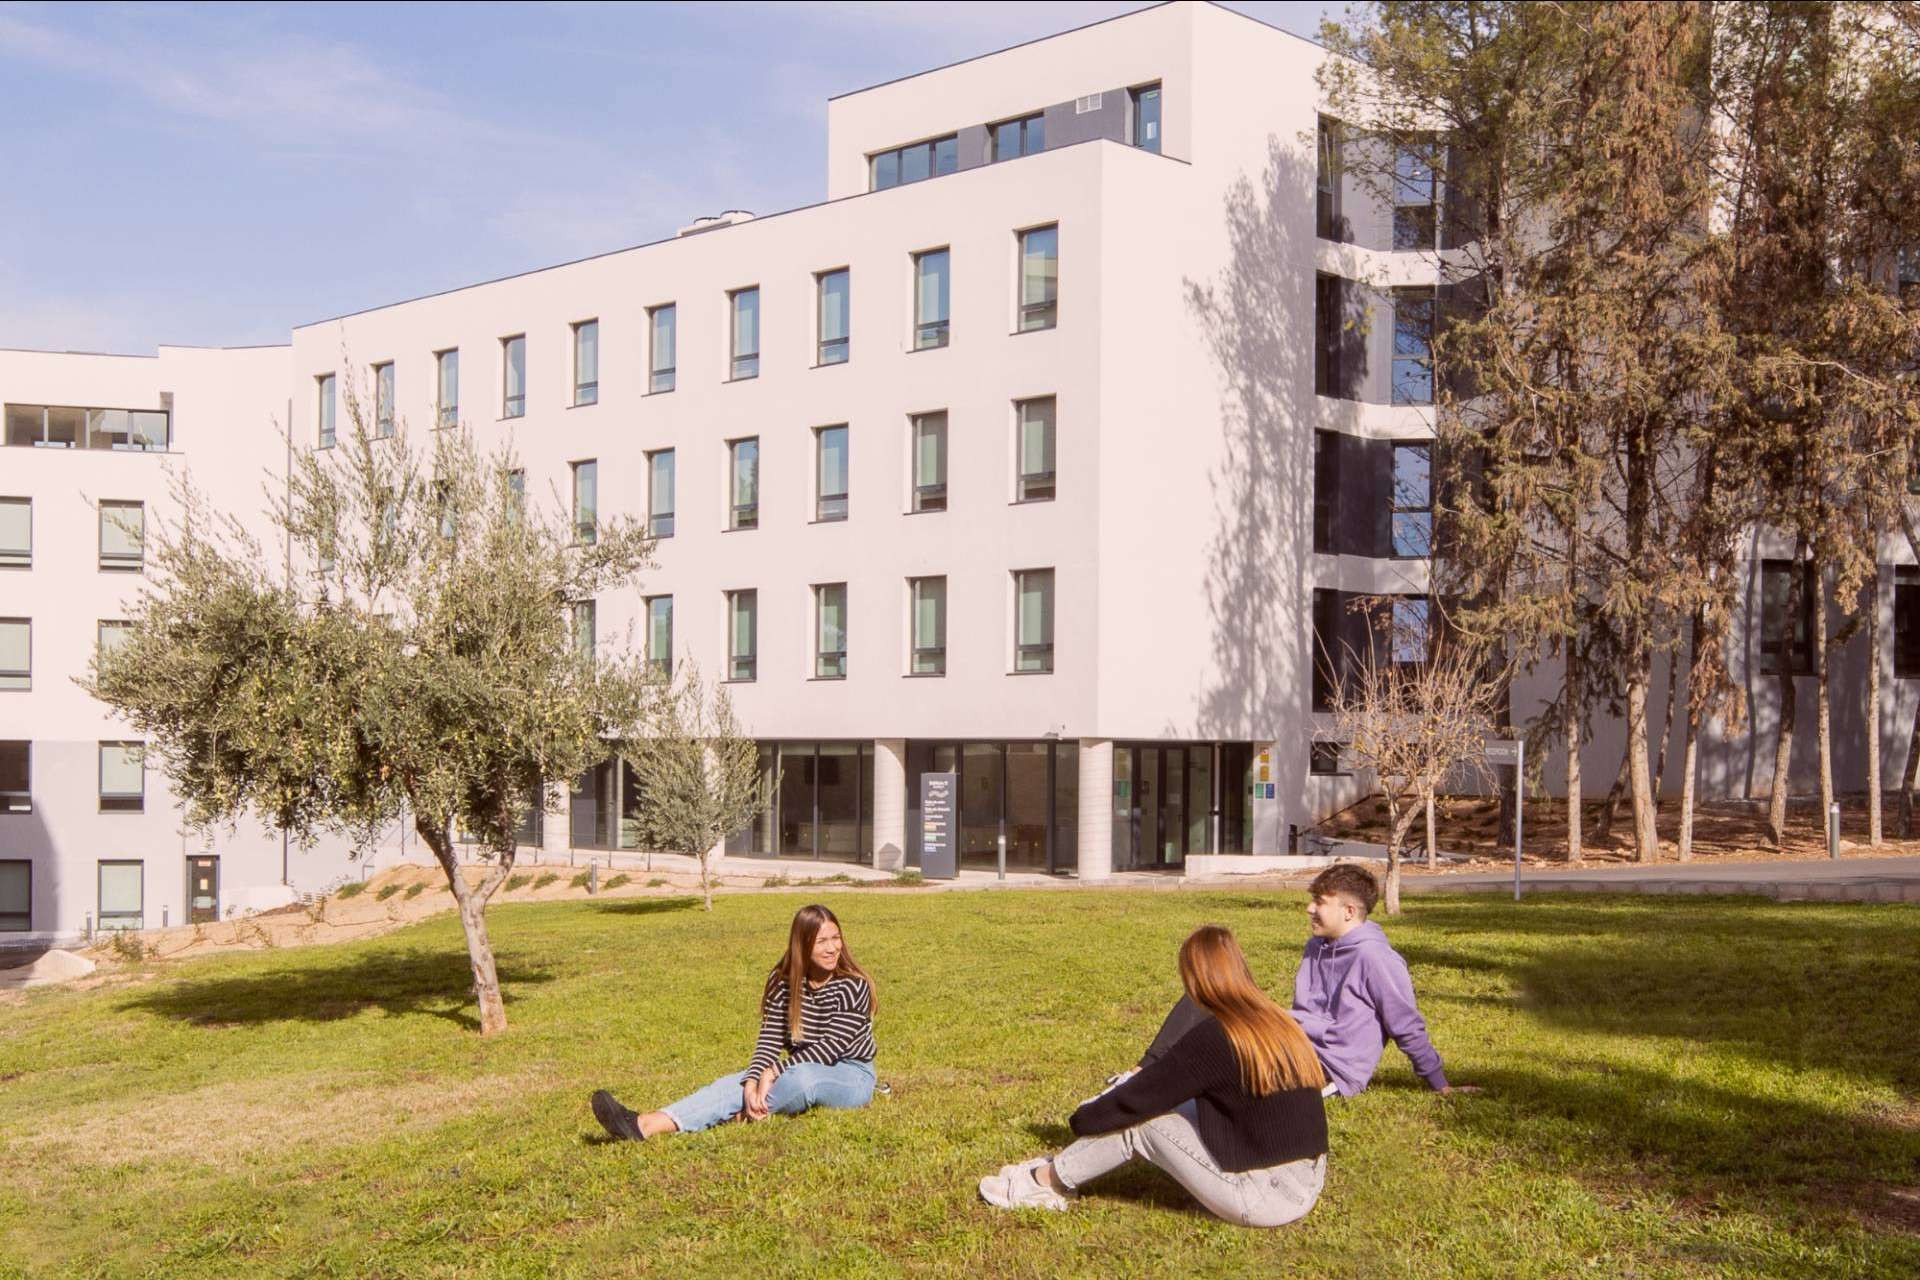  Residencia para estudiantes Xior Granada, un lugar ideal para vivir durante la formación académica 